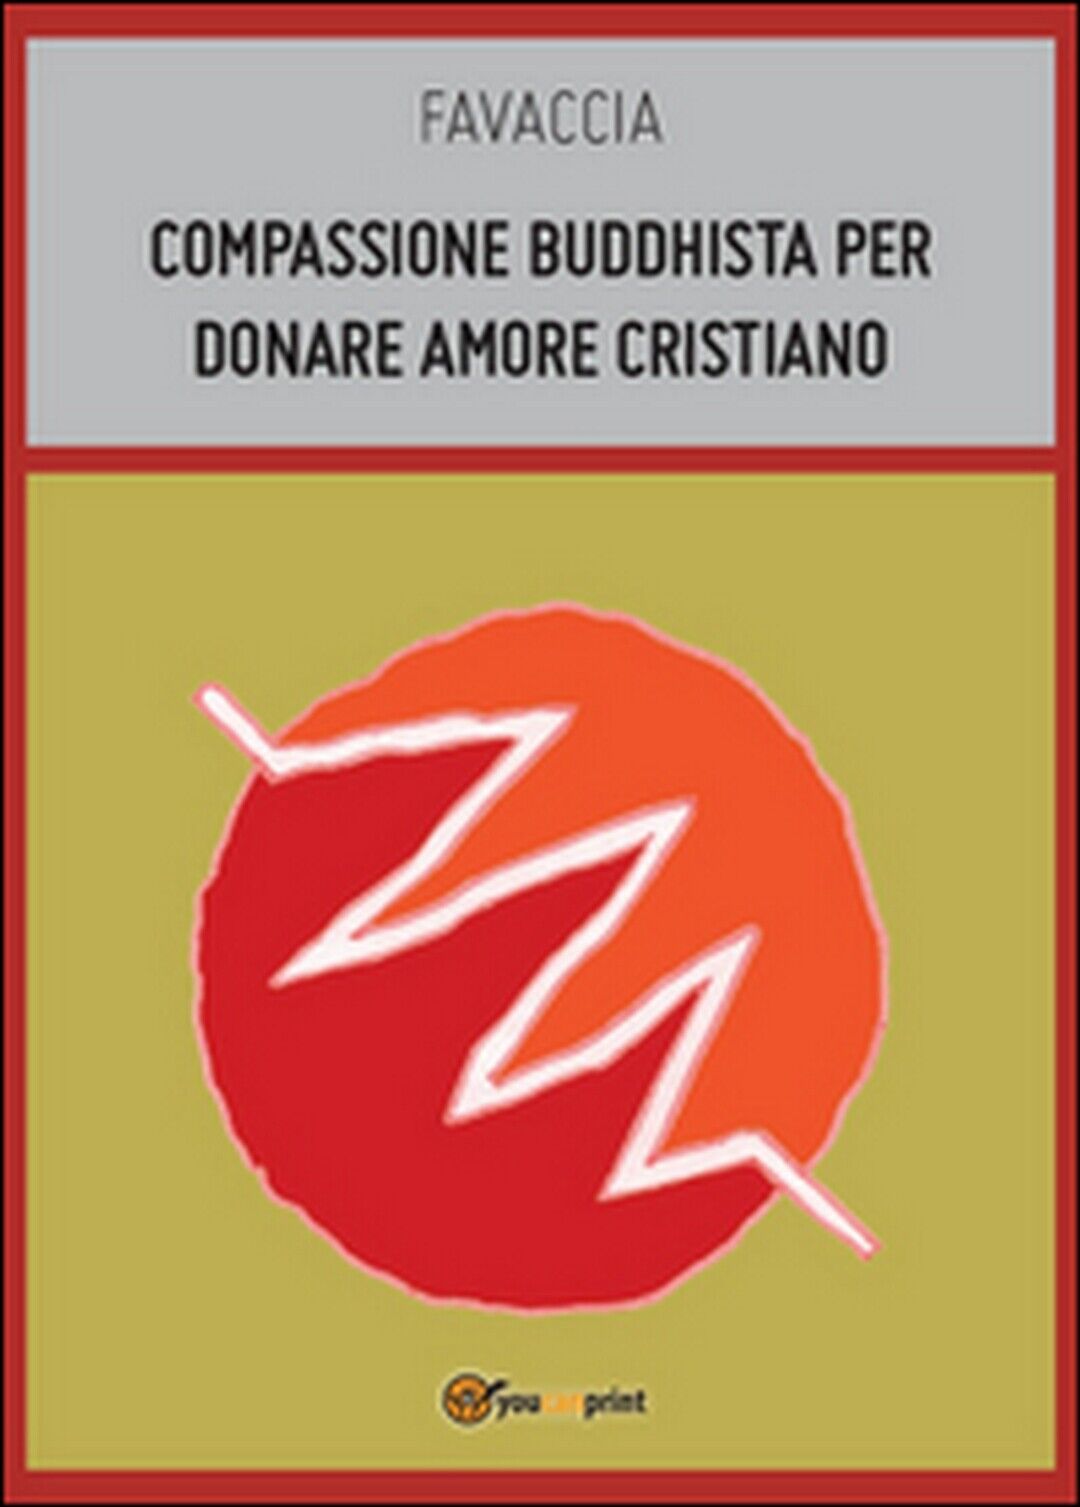 Compassione buddhista per donare amore cristiano  di Favaccia,  2014,  Youcanpri